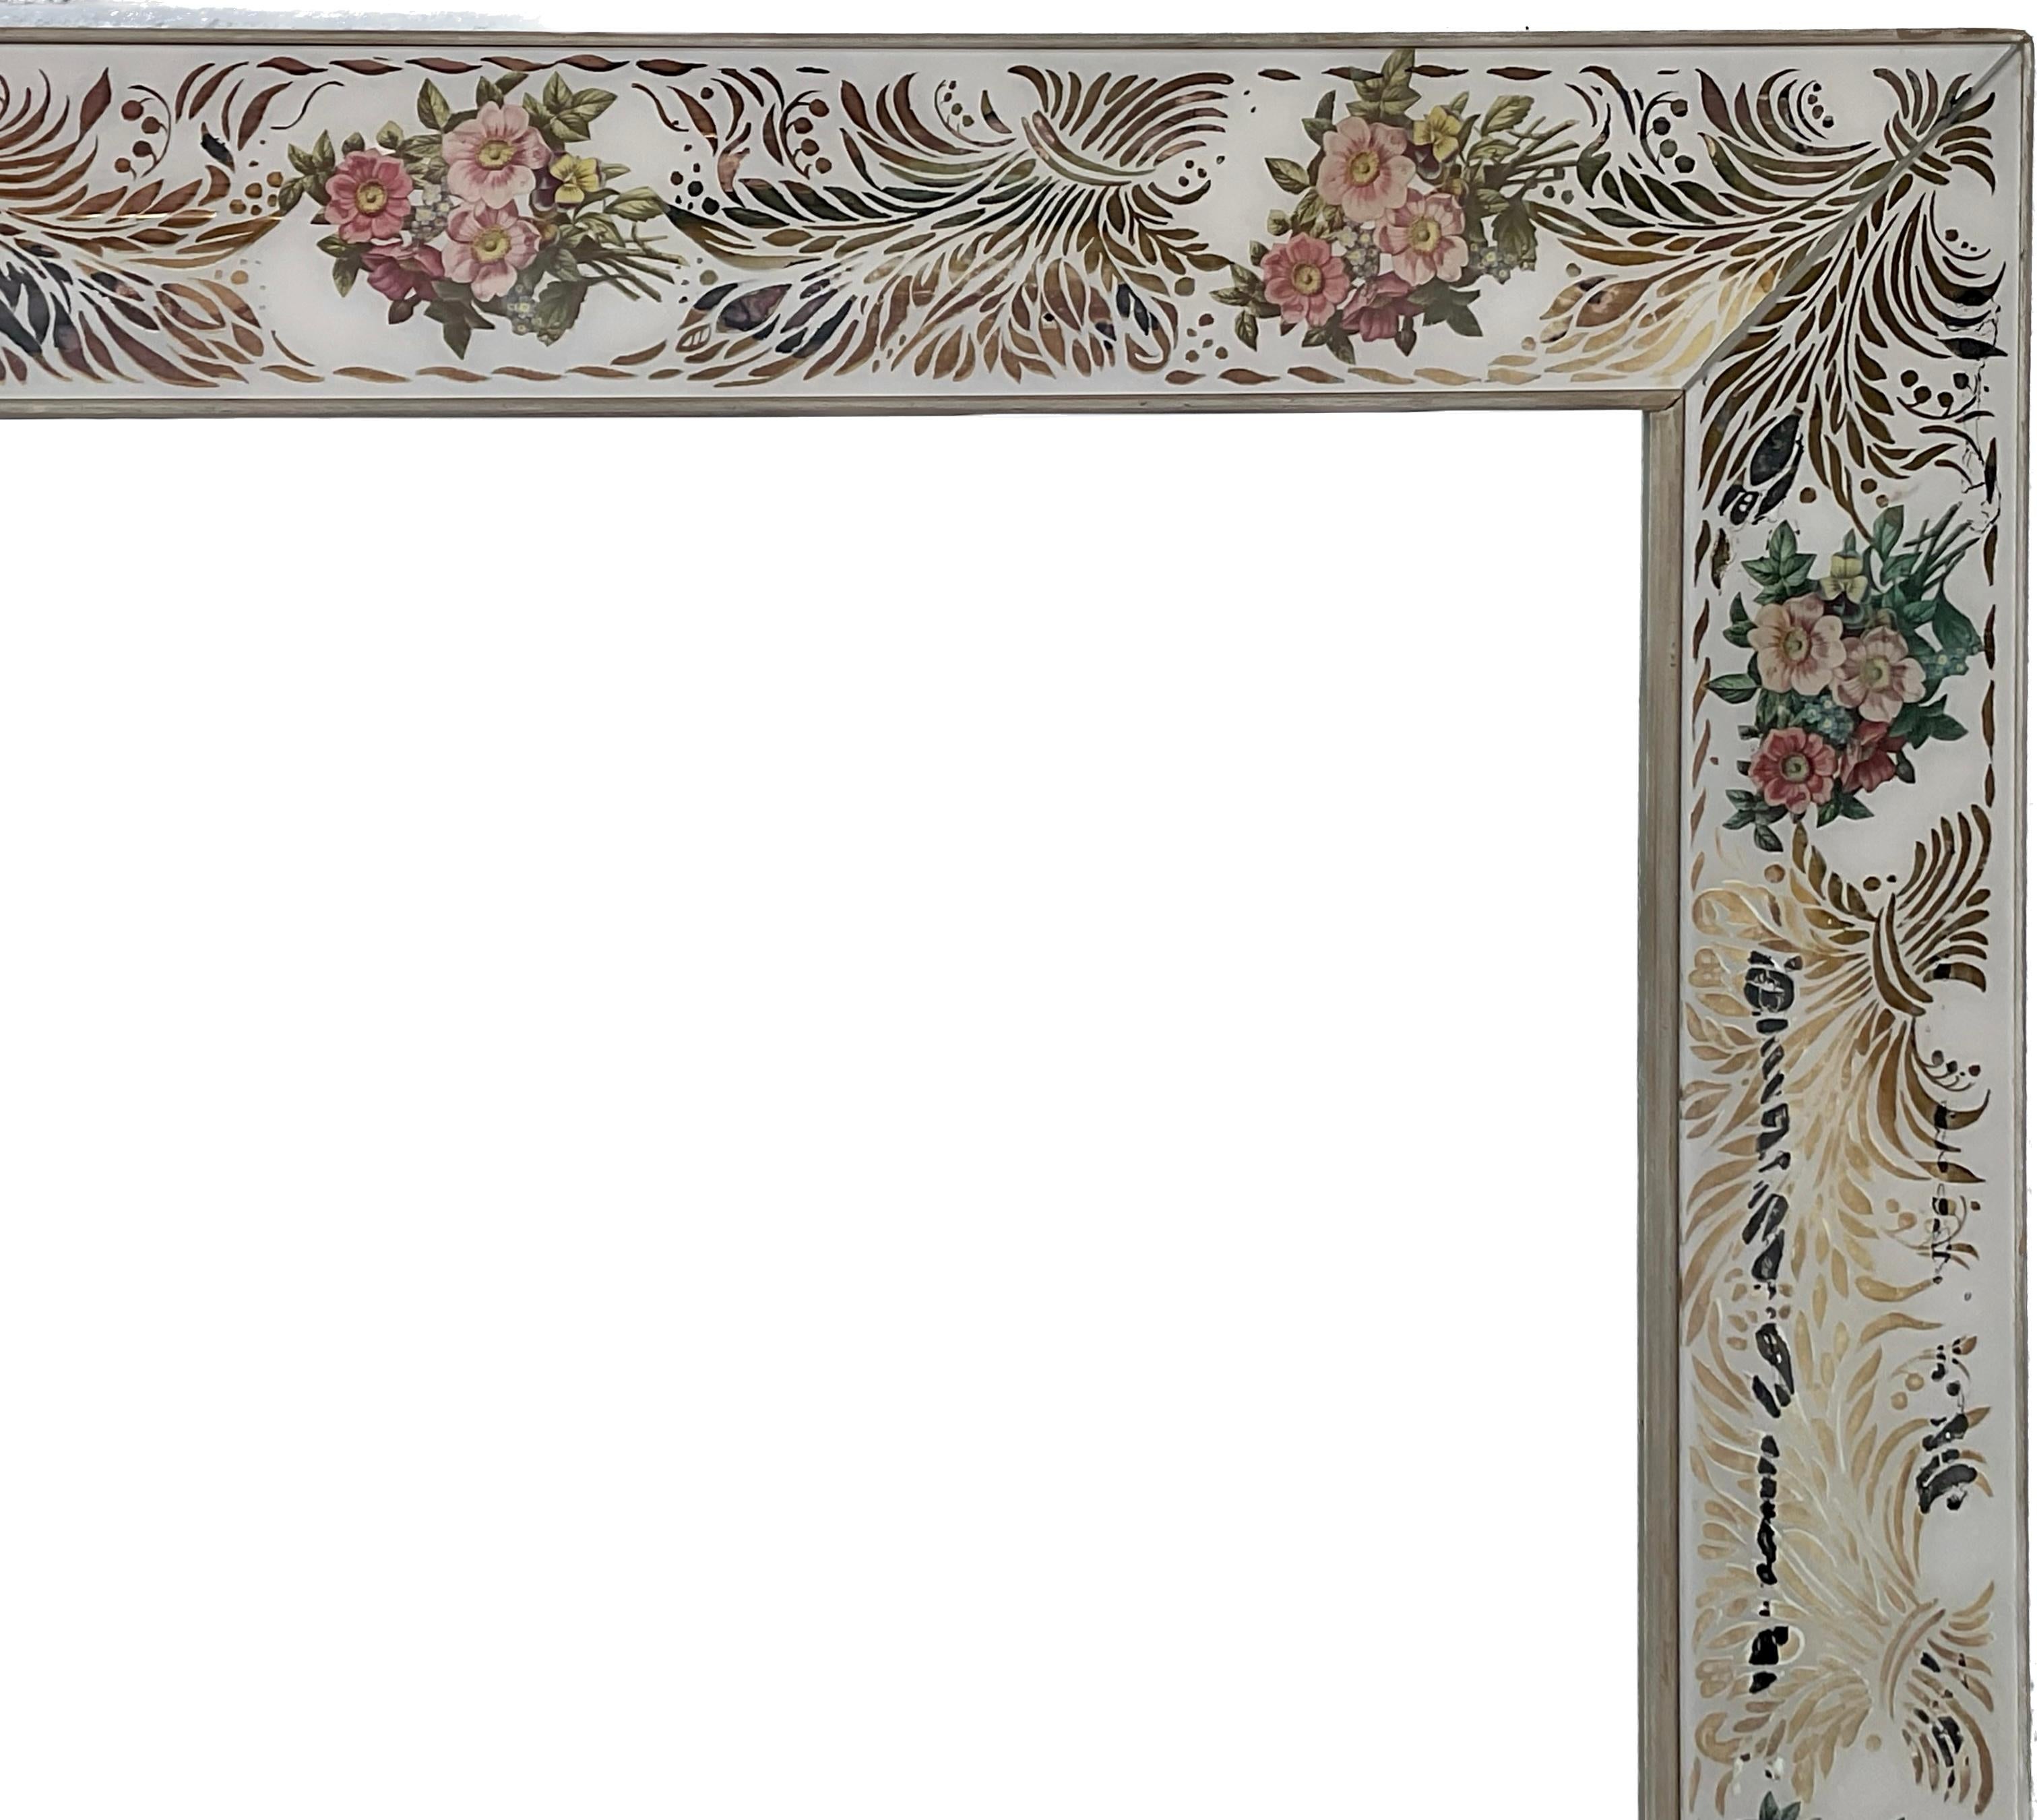 Le Verre Eglomise est un style français de dorure et de peinture sur verre inversé développé au 18ème siècle. Le design et la dorure sont appliqués sur la face arrière du verre et peuvent être combinés à d'autres techniques de décoration telles que